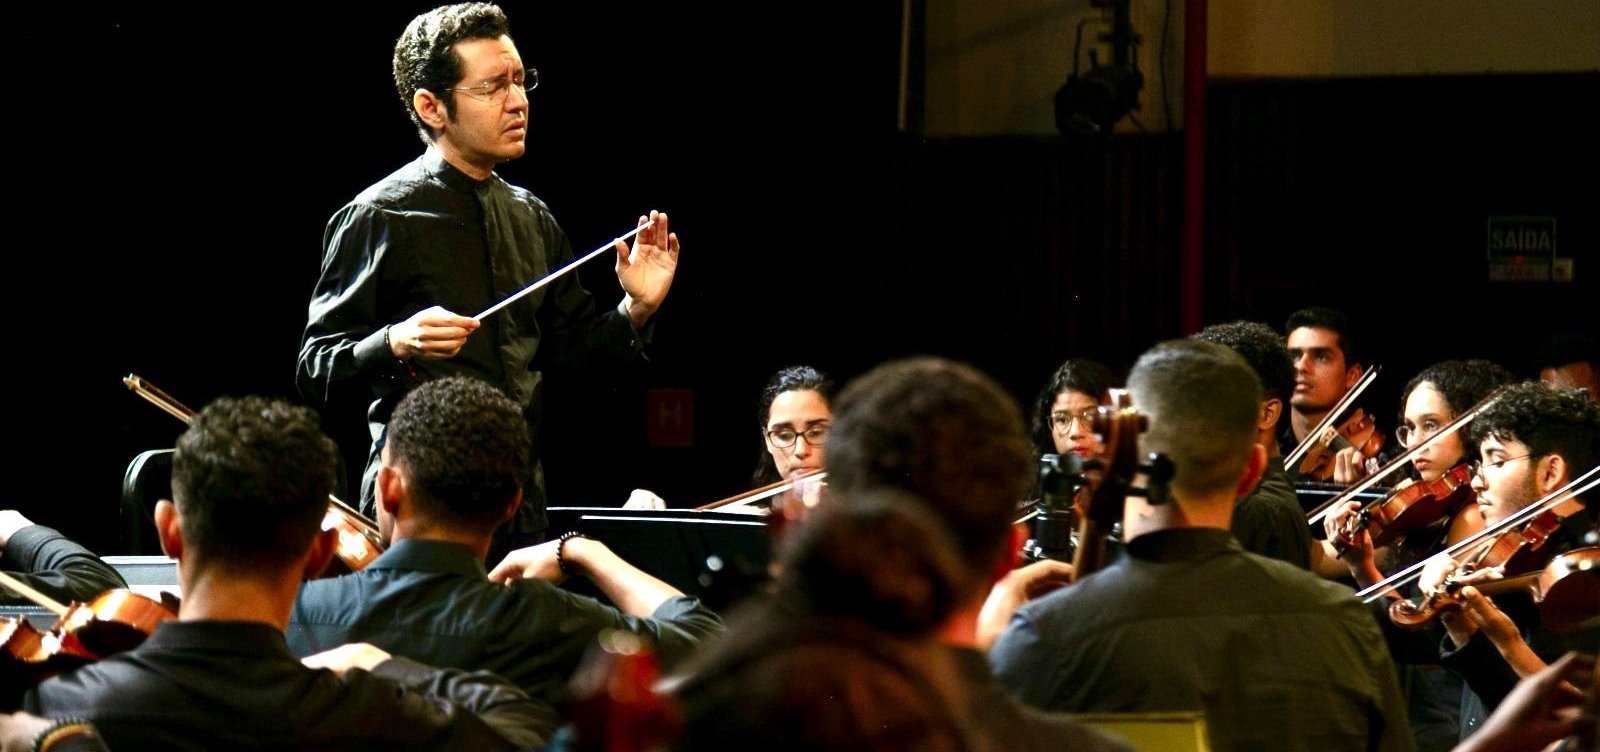 NEOJIBA promove concertos em homenagem ao maestro José Antonio Abreu, criador do El Sistema